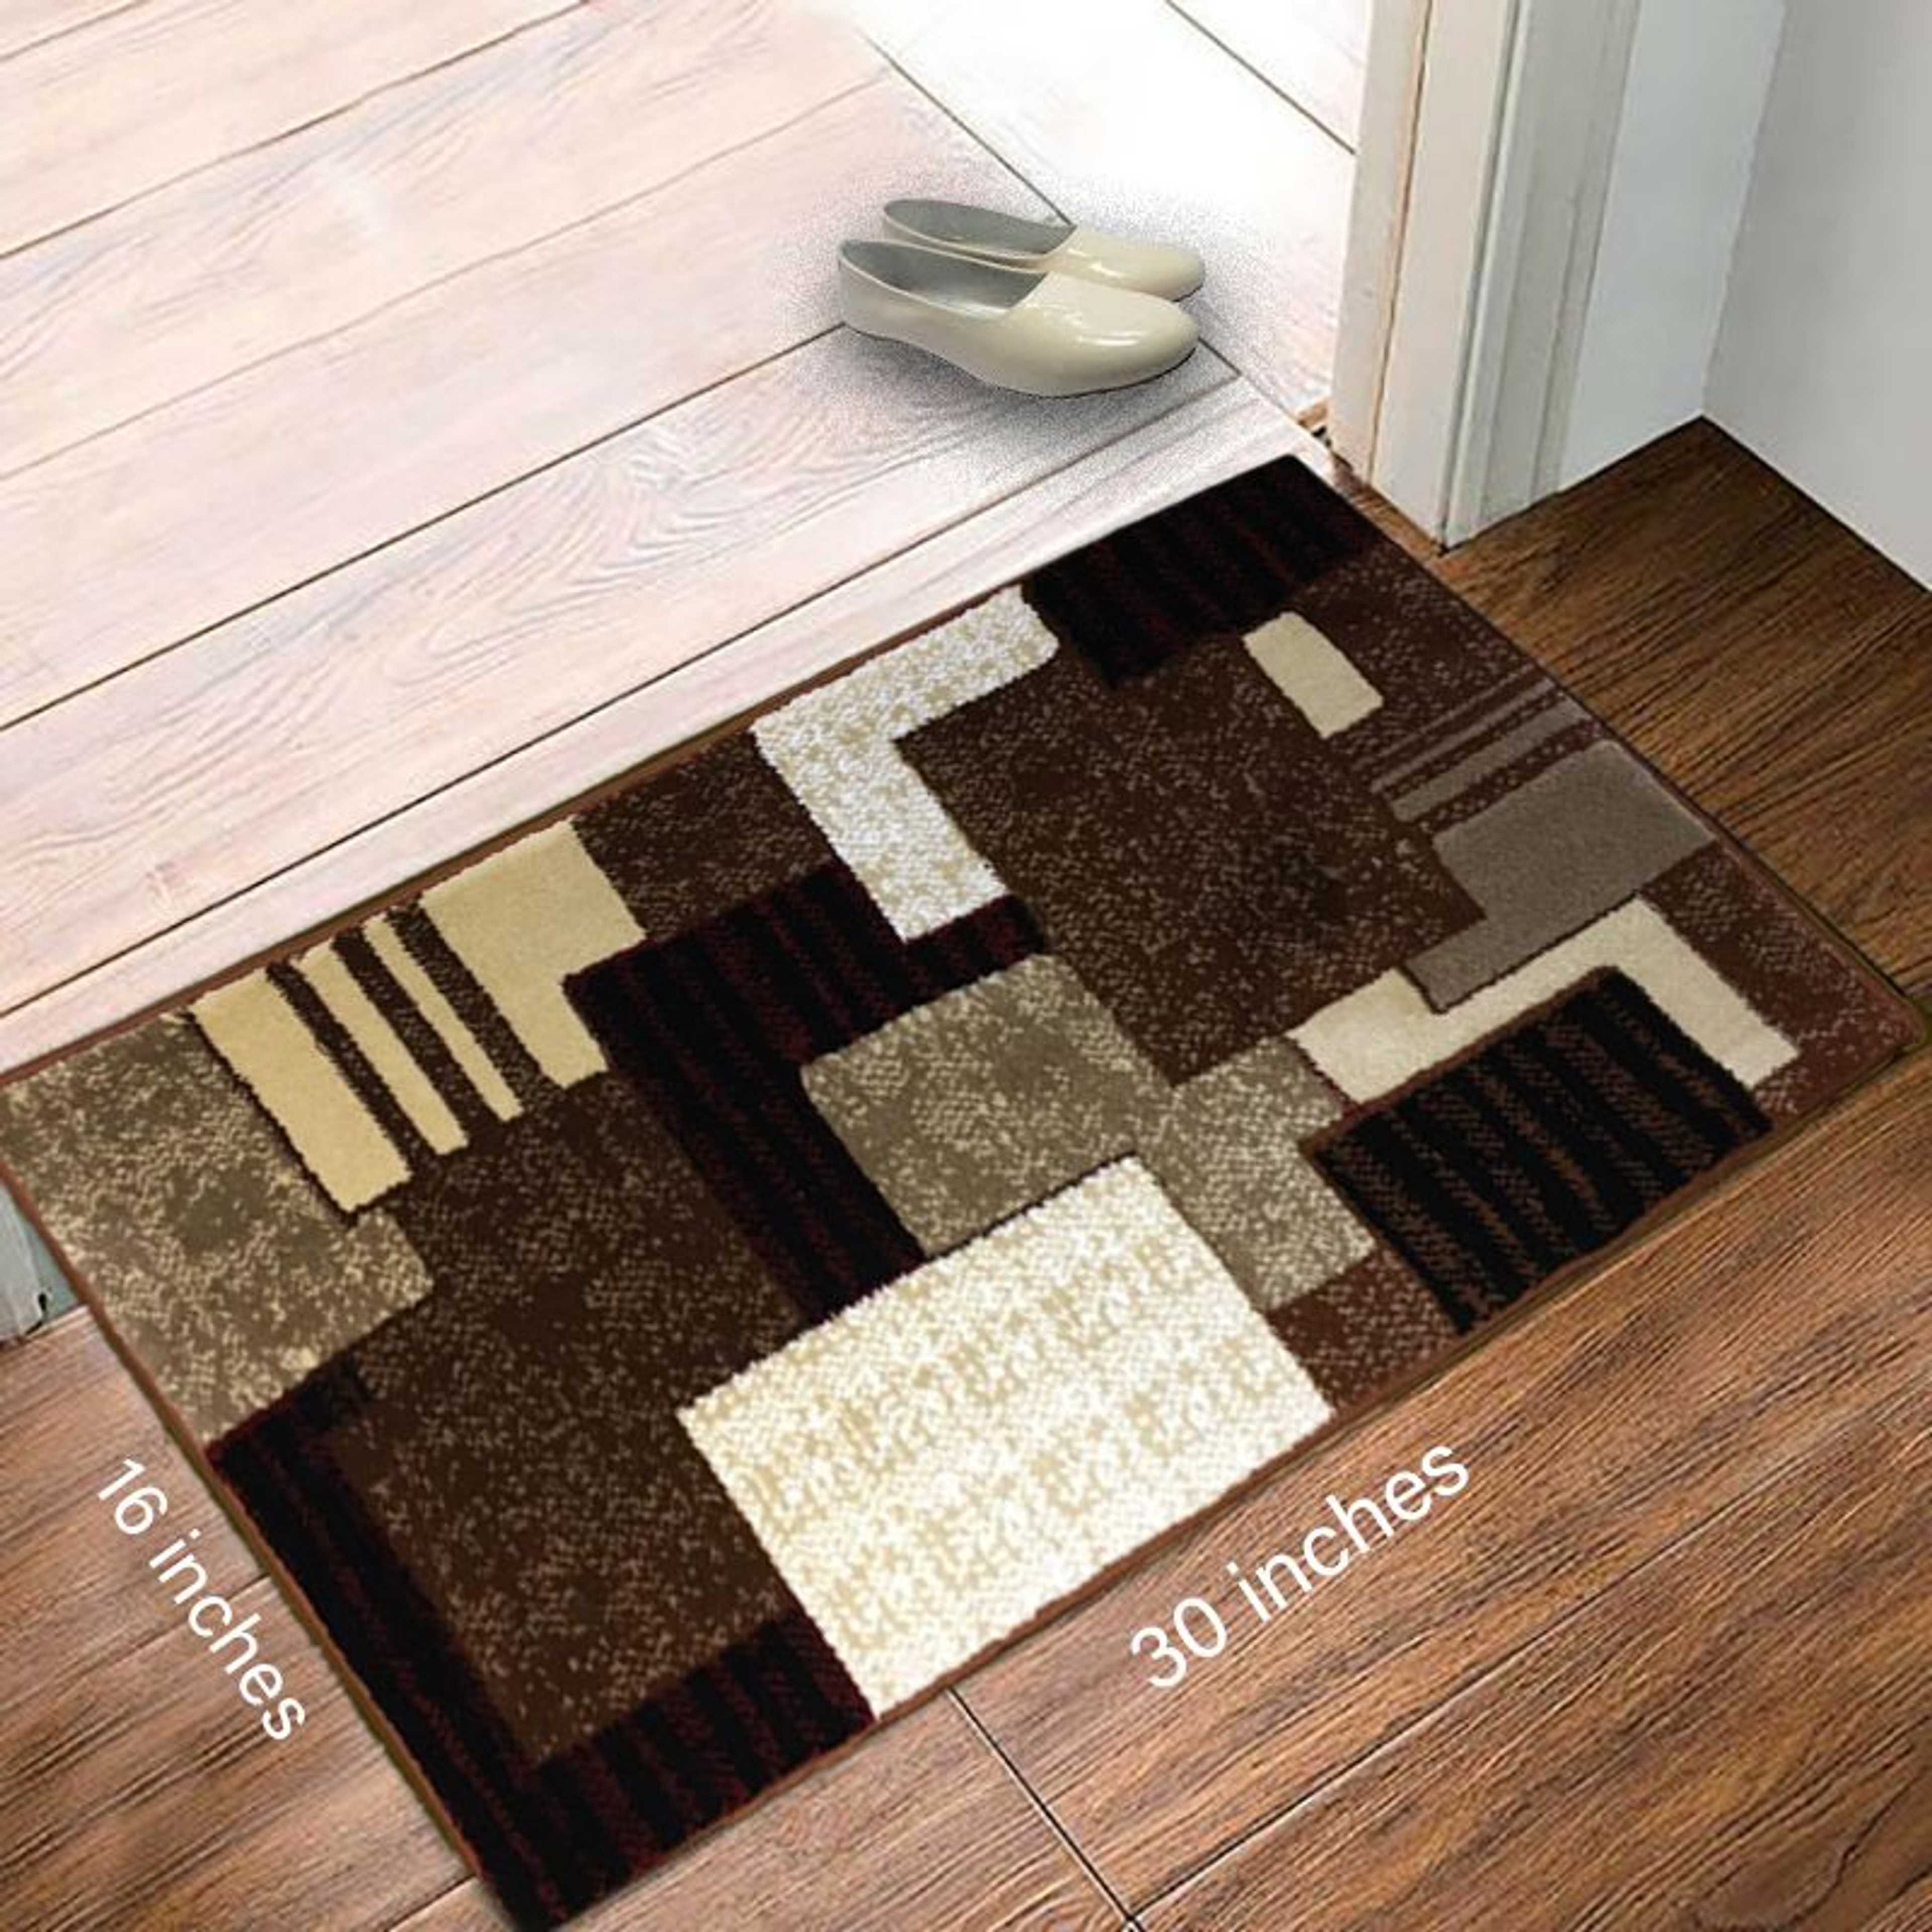 Al Ferash Turkish Imported Carpet Stuff Woven Bed Room Door Mats | Floor Mats | Entrance Mat